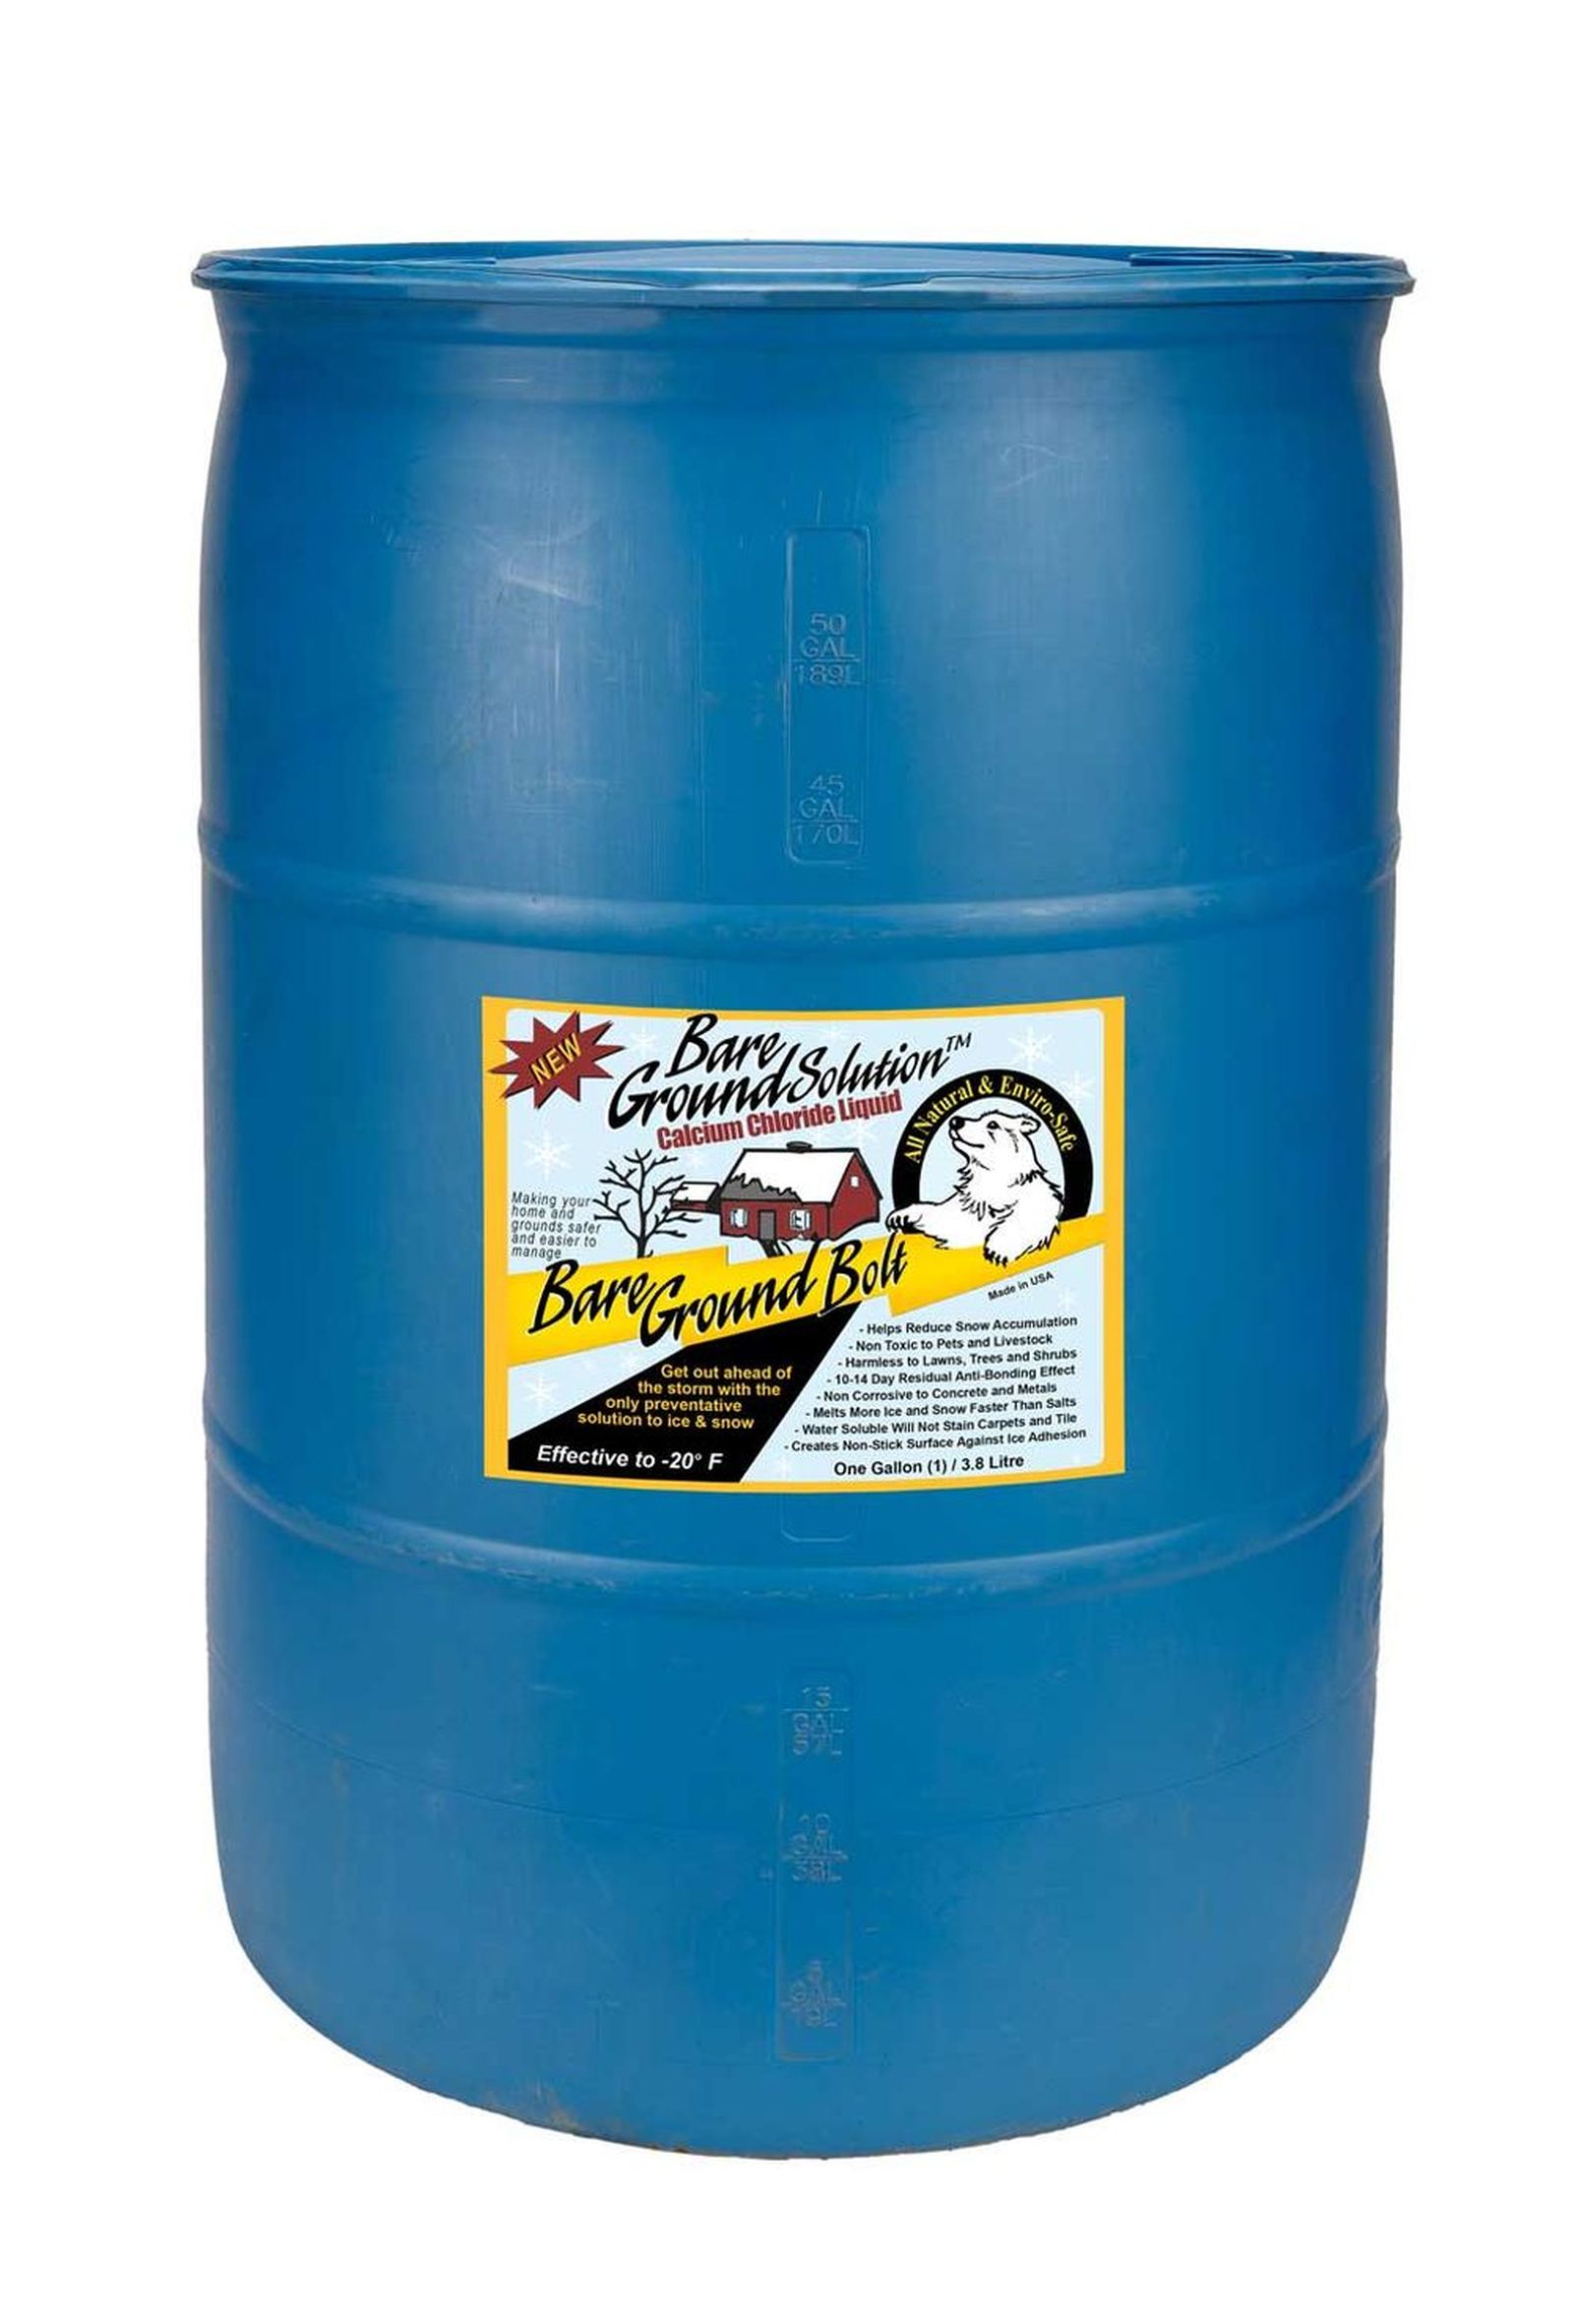 Bare Ground BGB-55DC 55 Gallon Drum Calcium Chloride Liquid